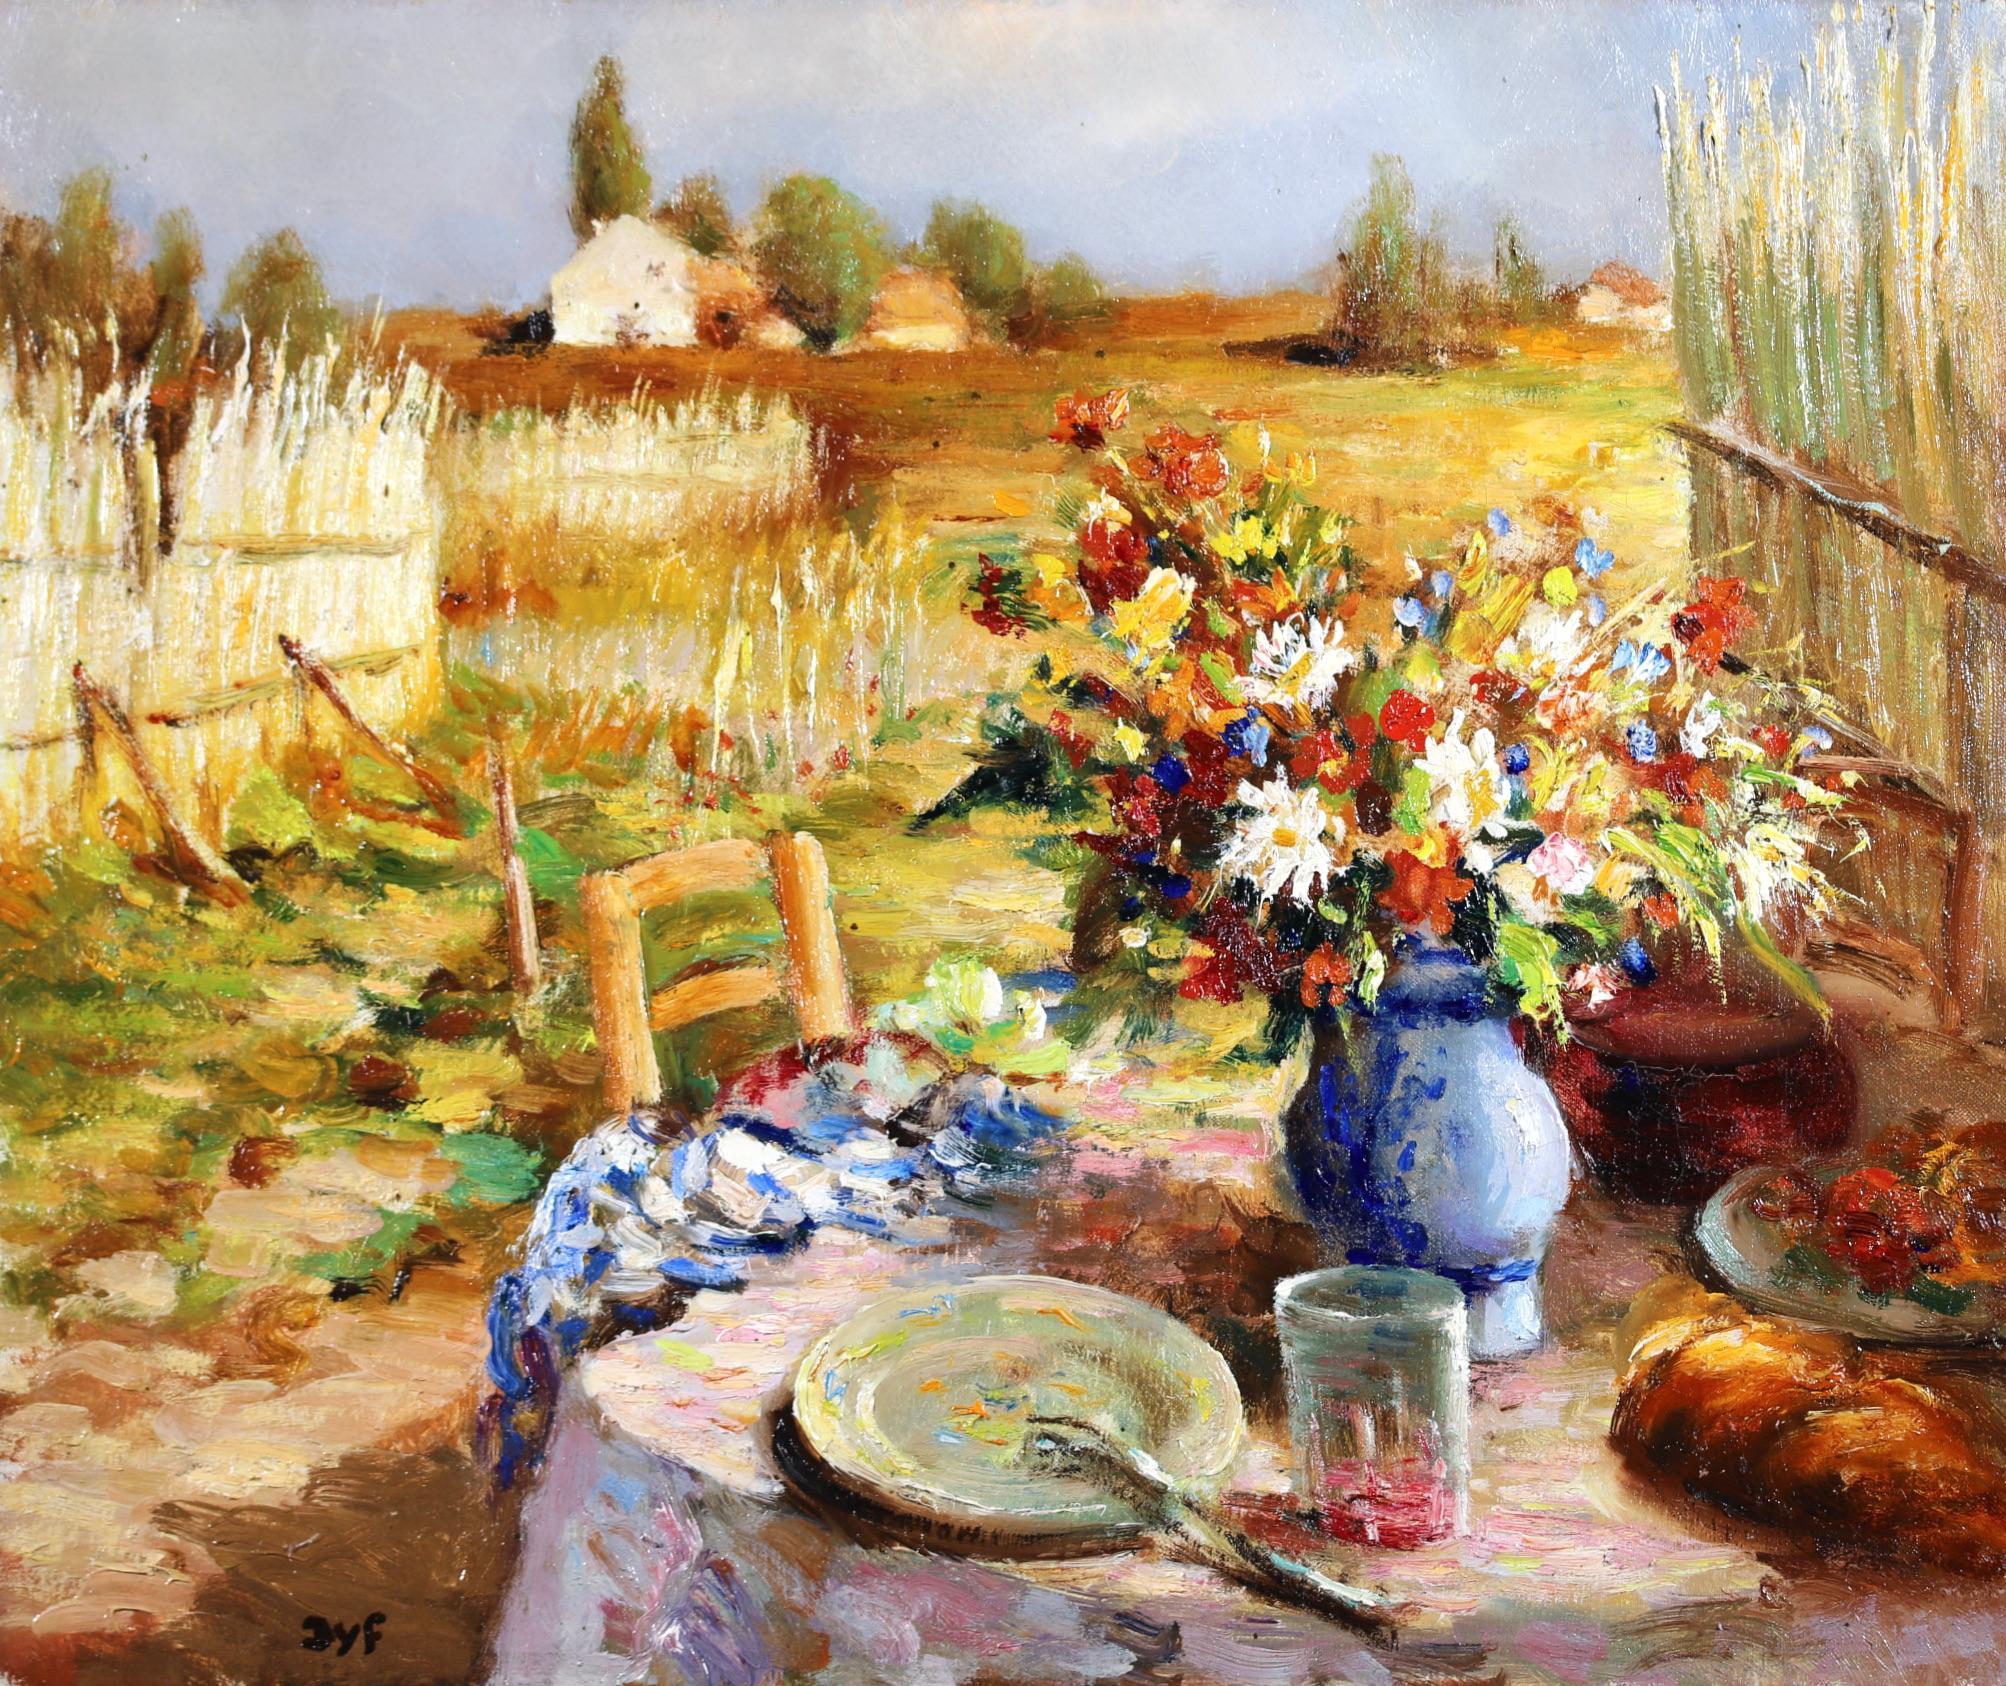 Le Petit Dejeuner - Peinture à l'huile post-impressionniste de Marcel Dyf